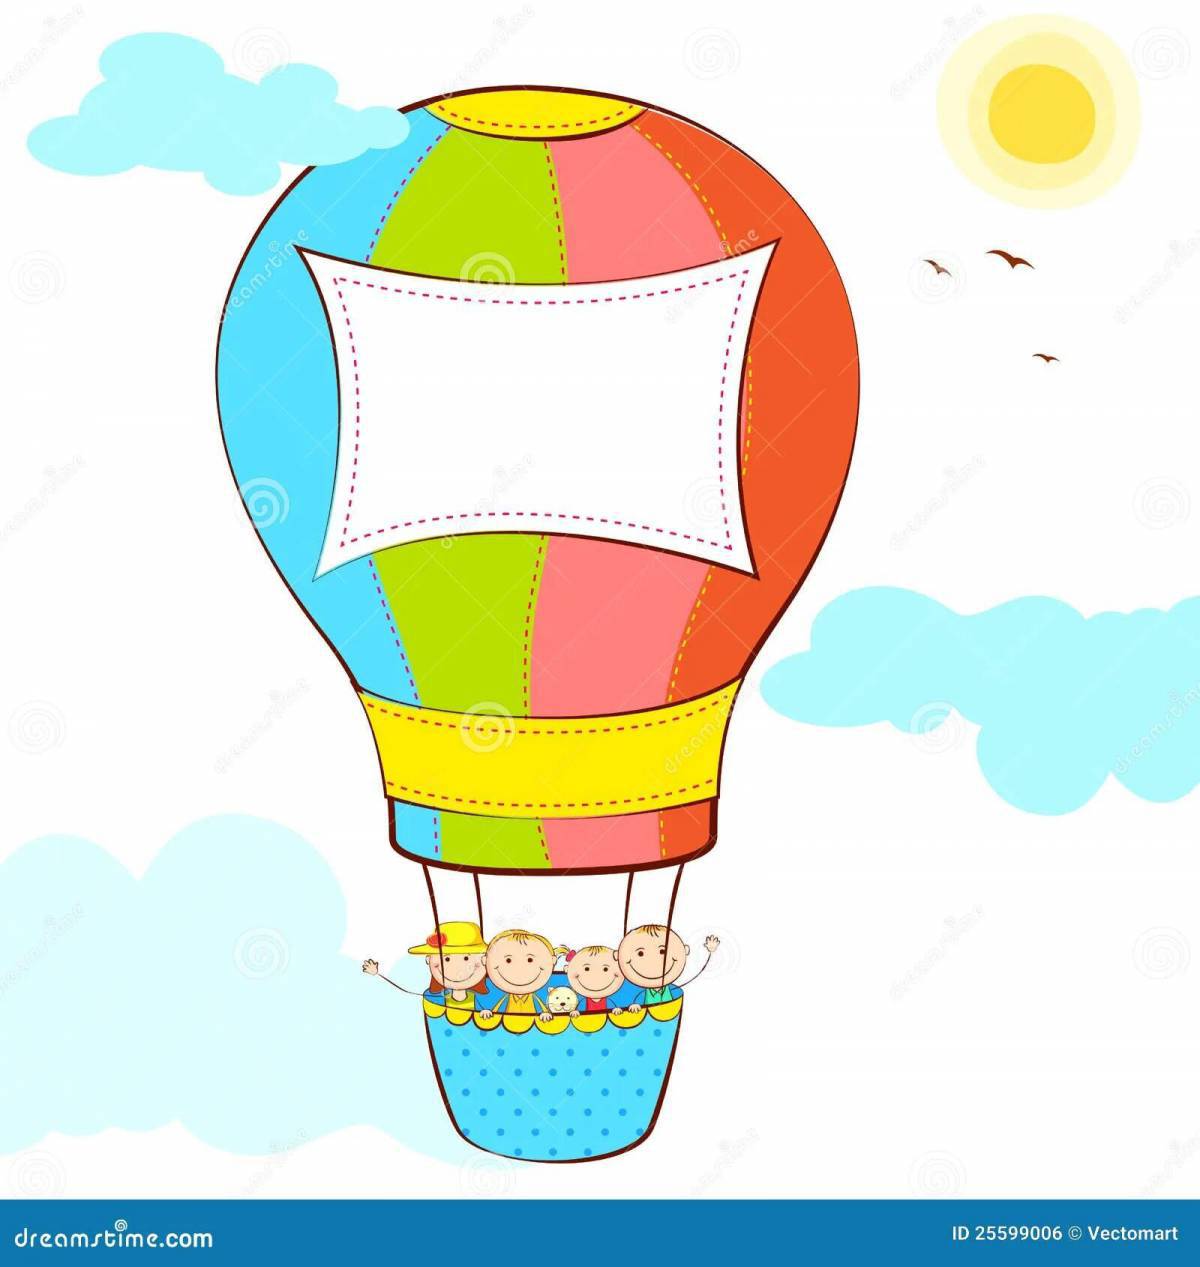 Игры, конкурсы, забавы с воздушными шарами